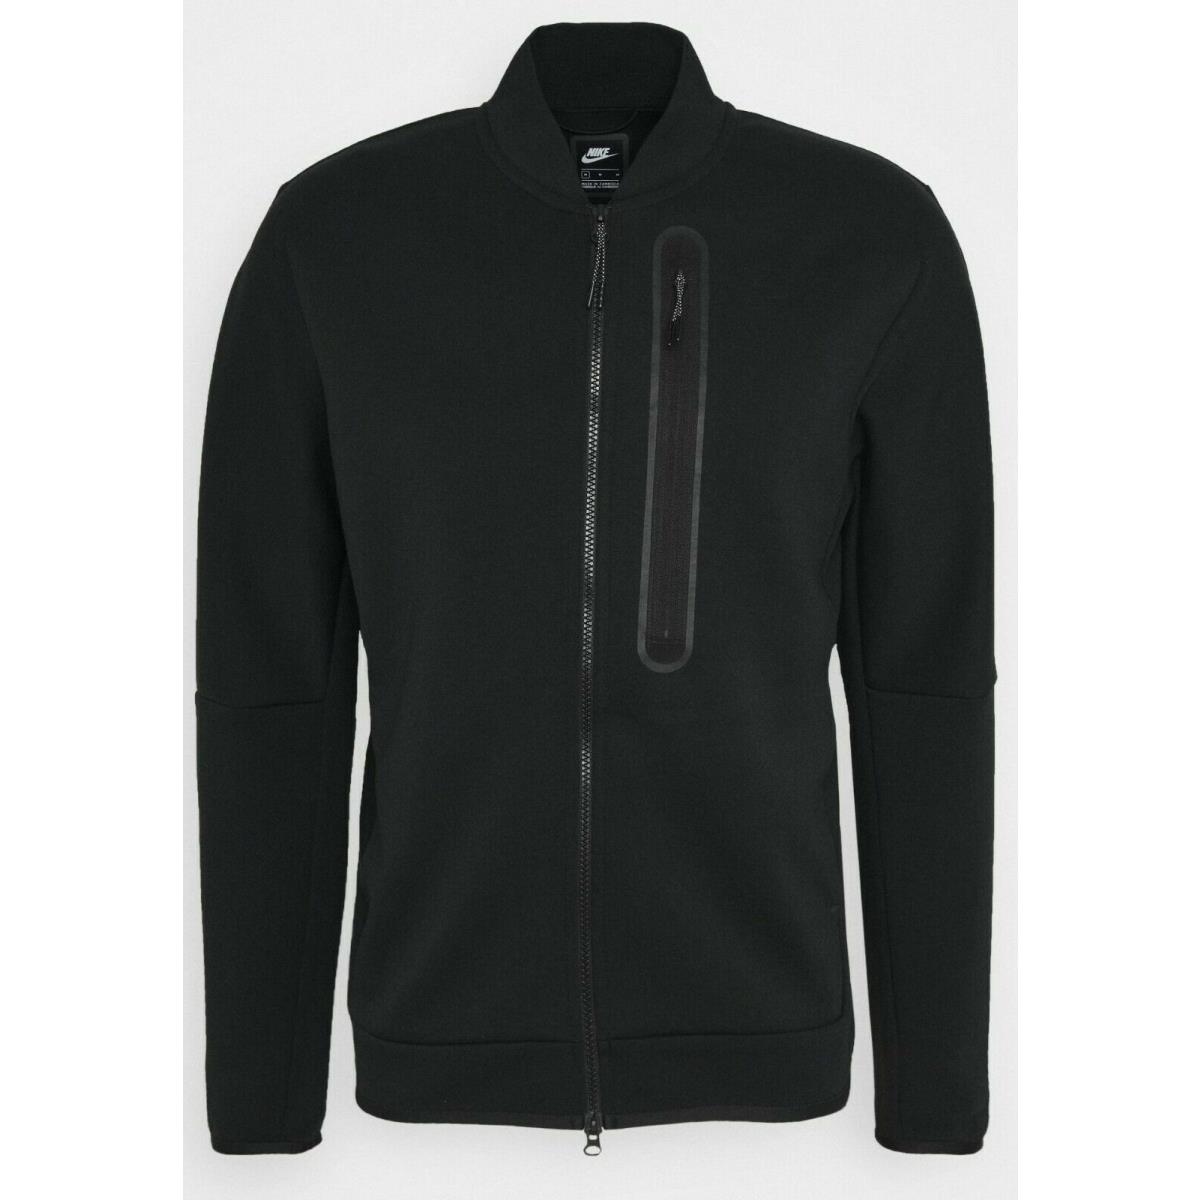 Nike Sportswear Tech Fleece Full Men s Small Black Zip Bomber Jacket CZ1797 010